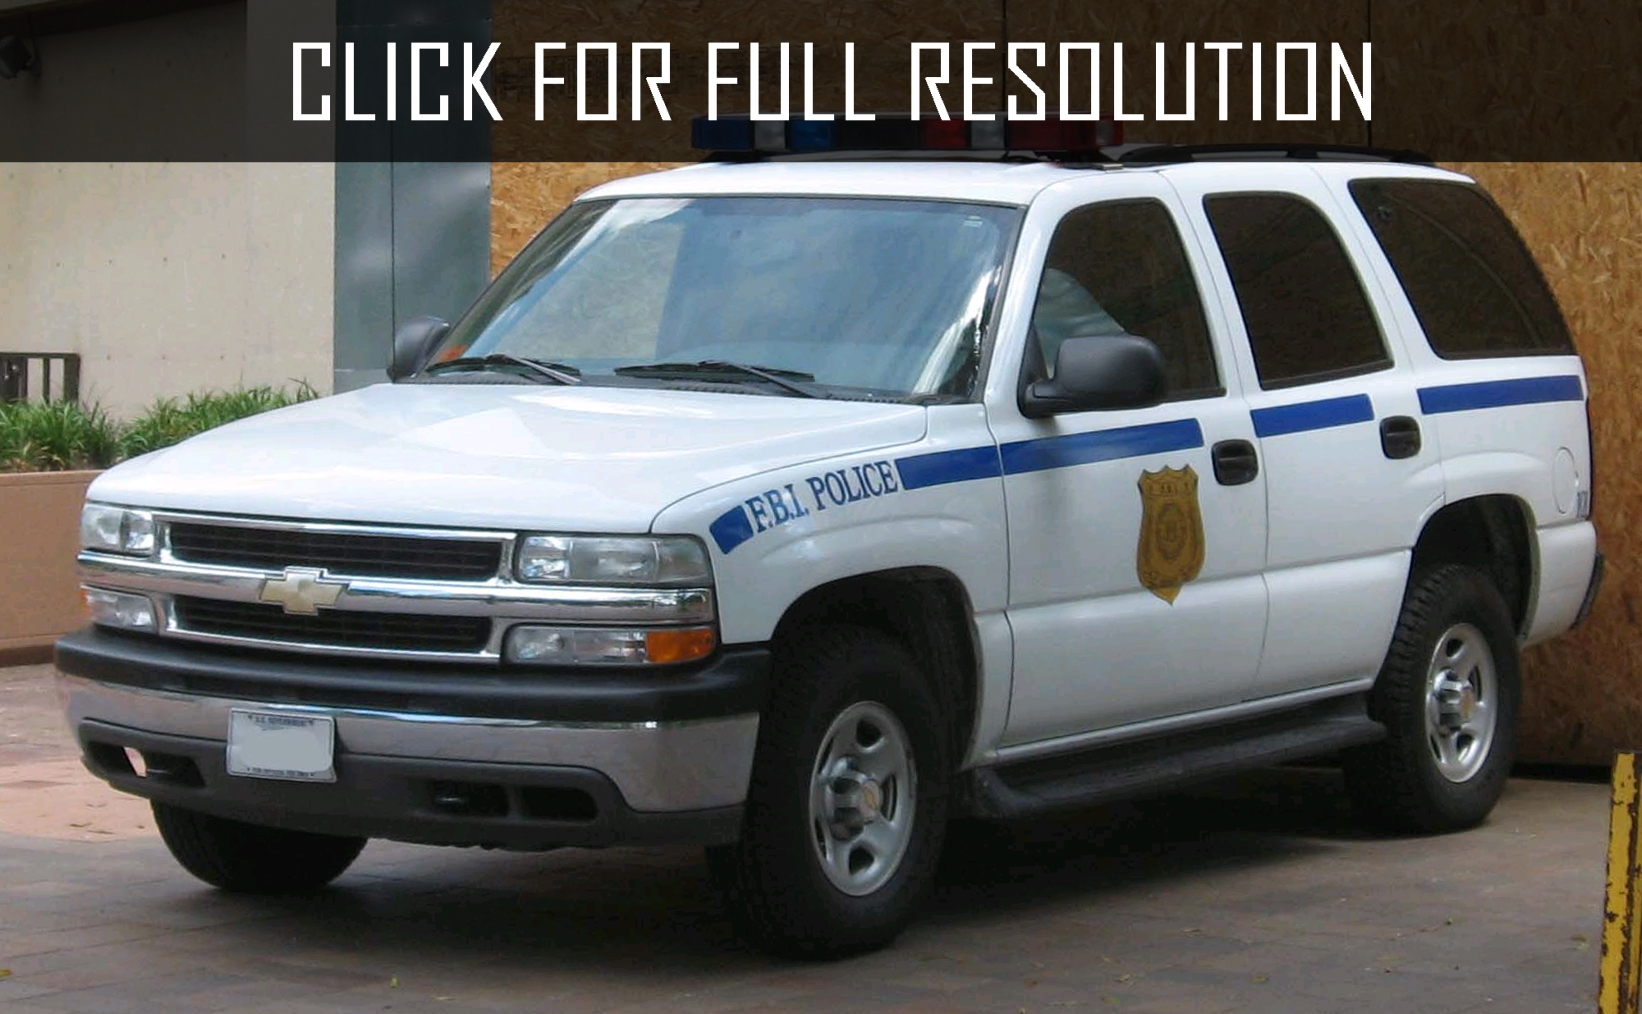 Chevrolet Silverado Police